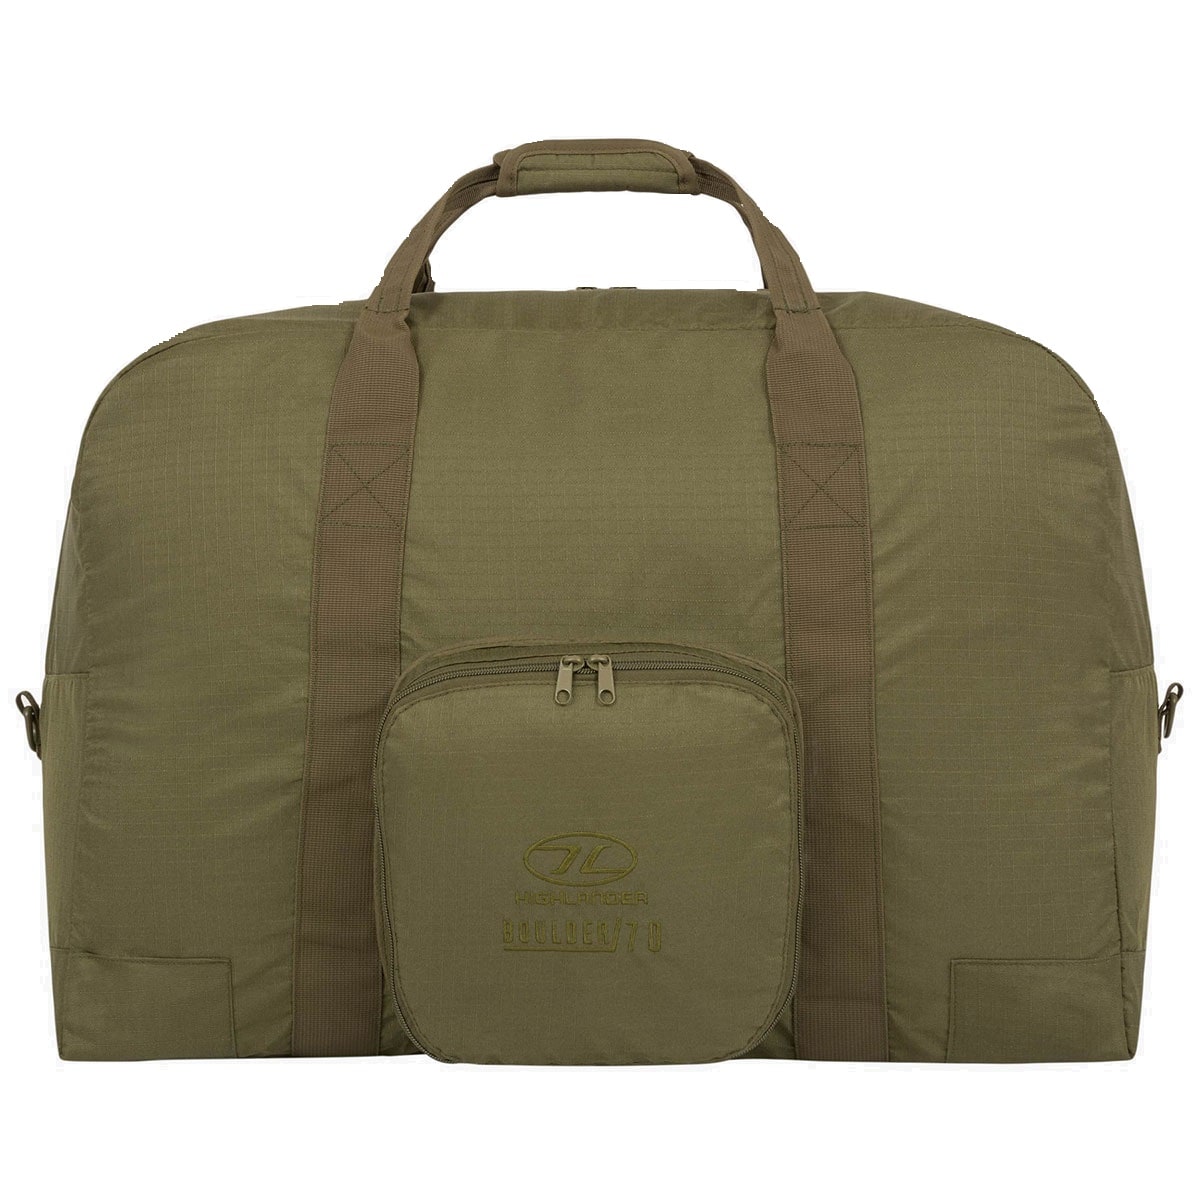 Сумка Highlander Outdoor Boulder Duffle Bag 40 л - Olive